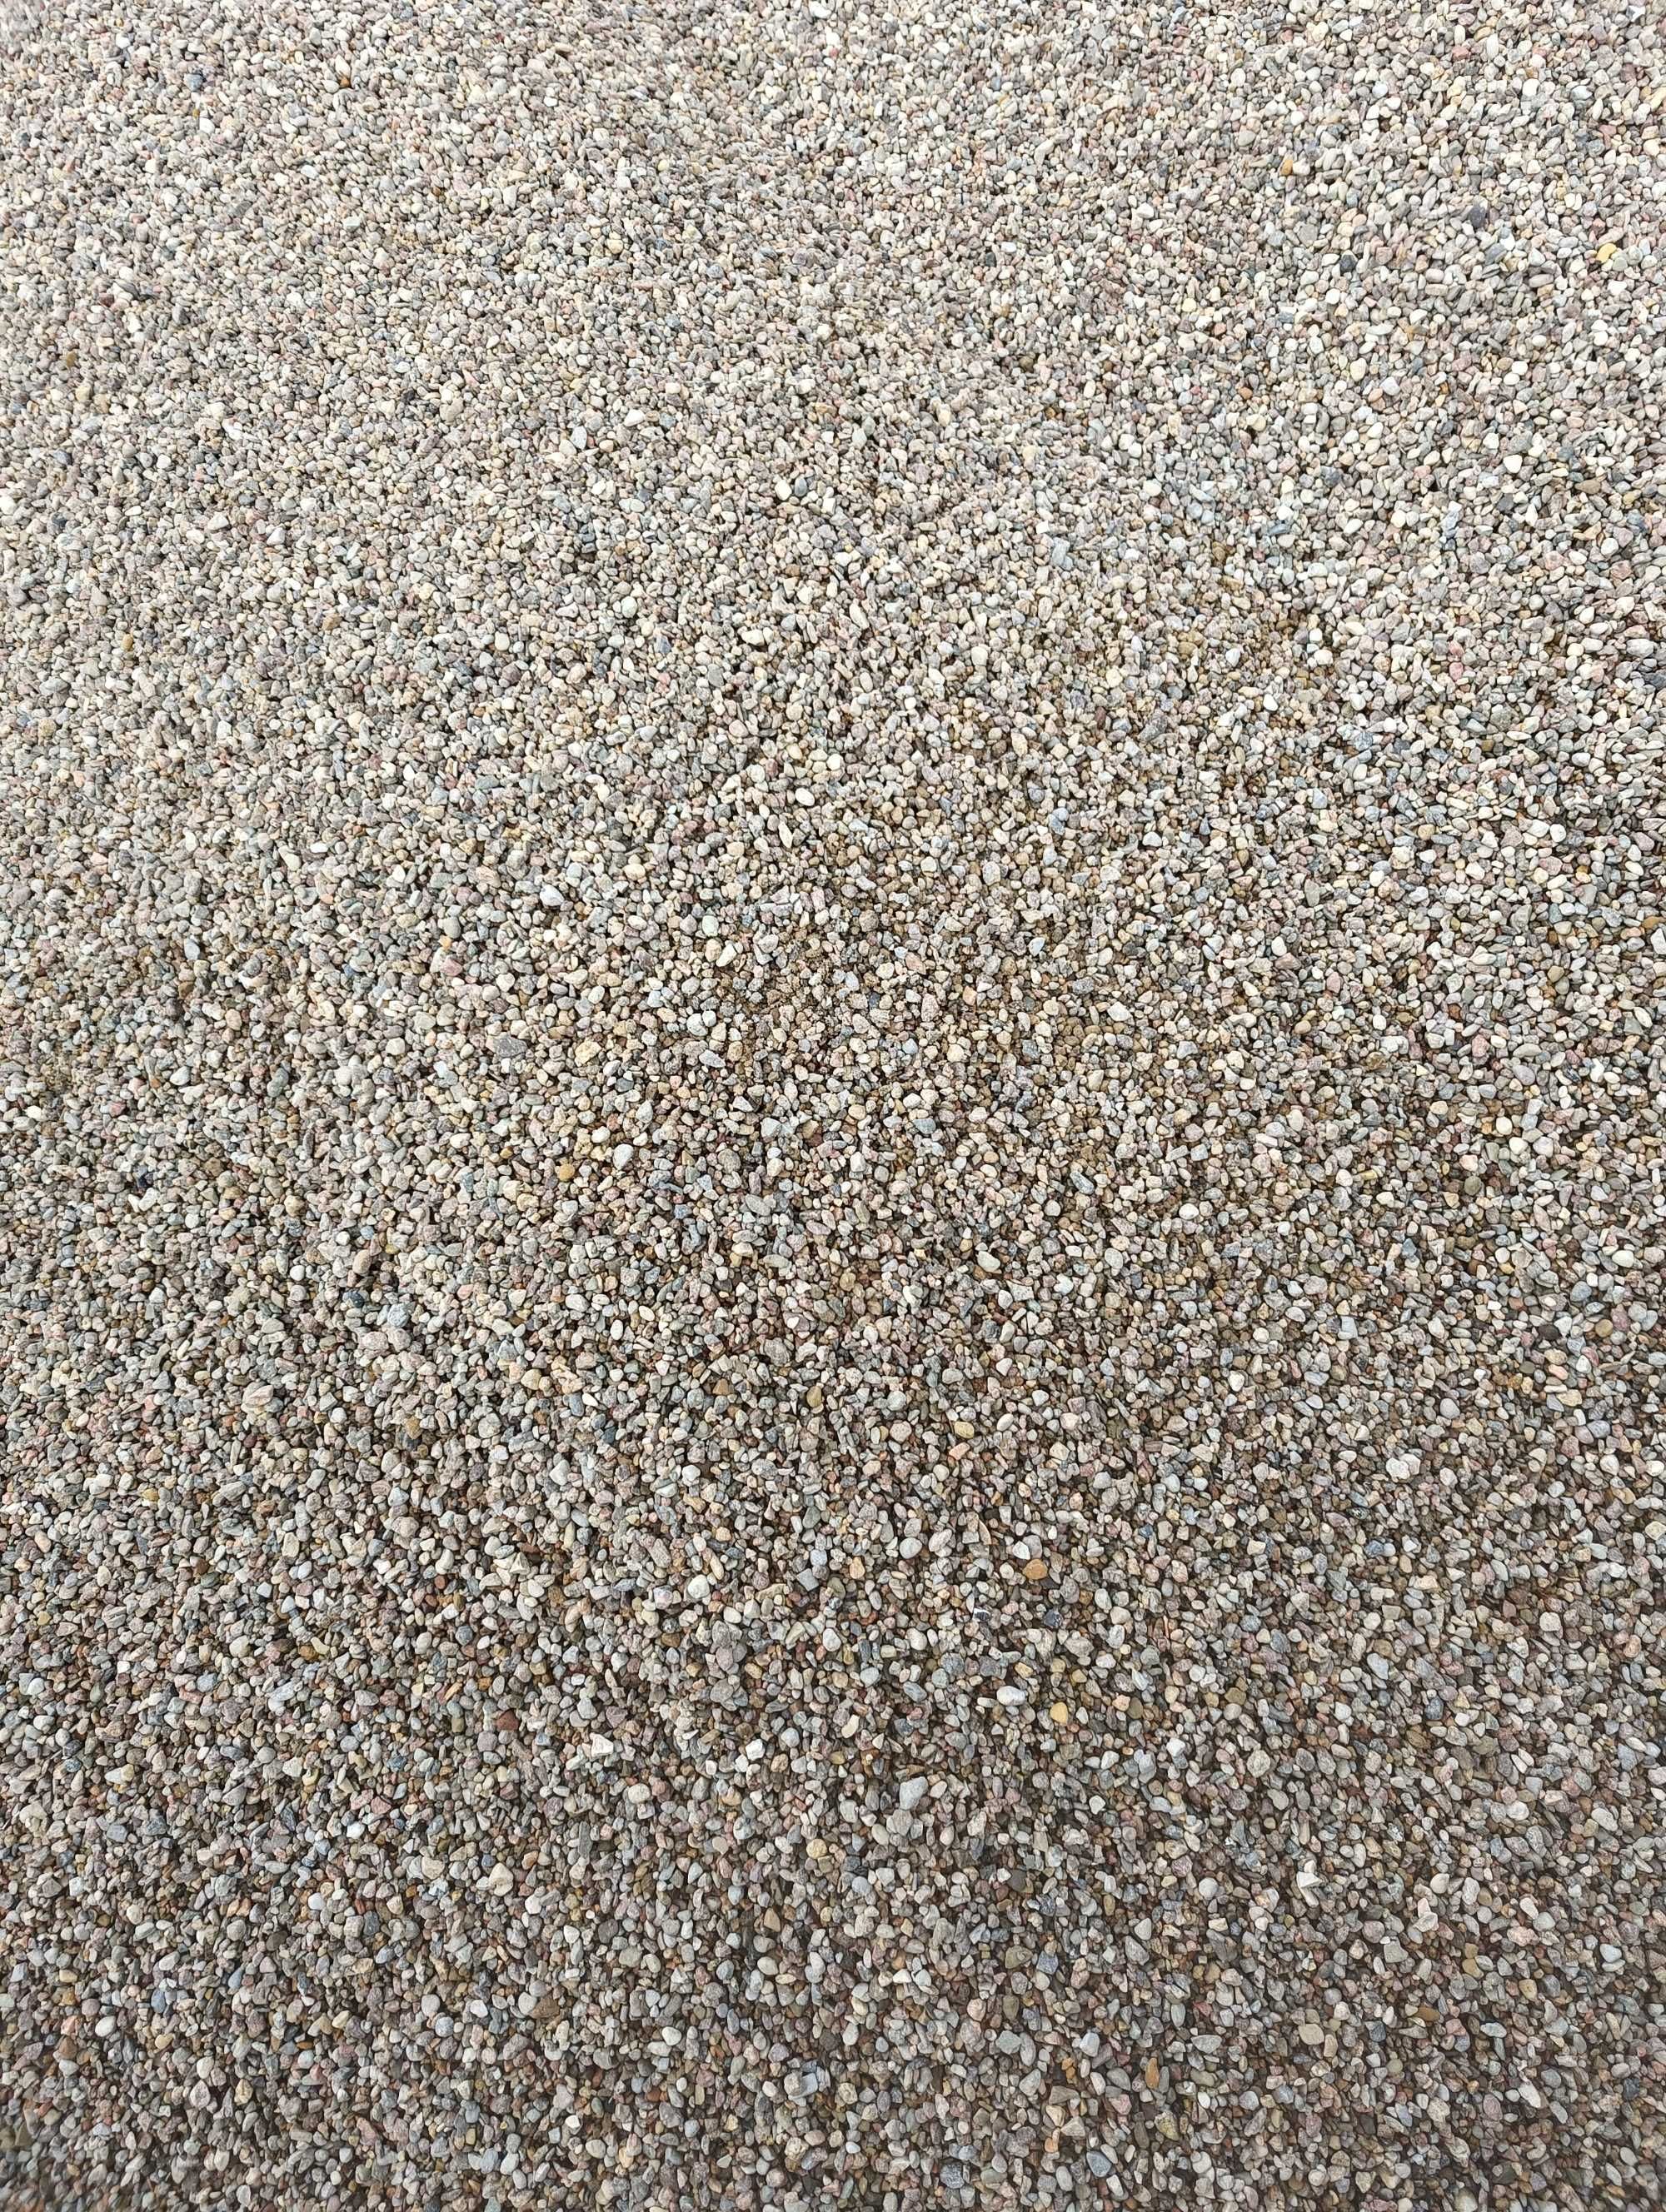 piasek  żwir beton wywrotka